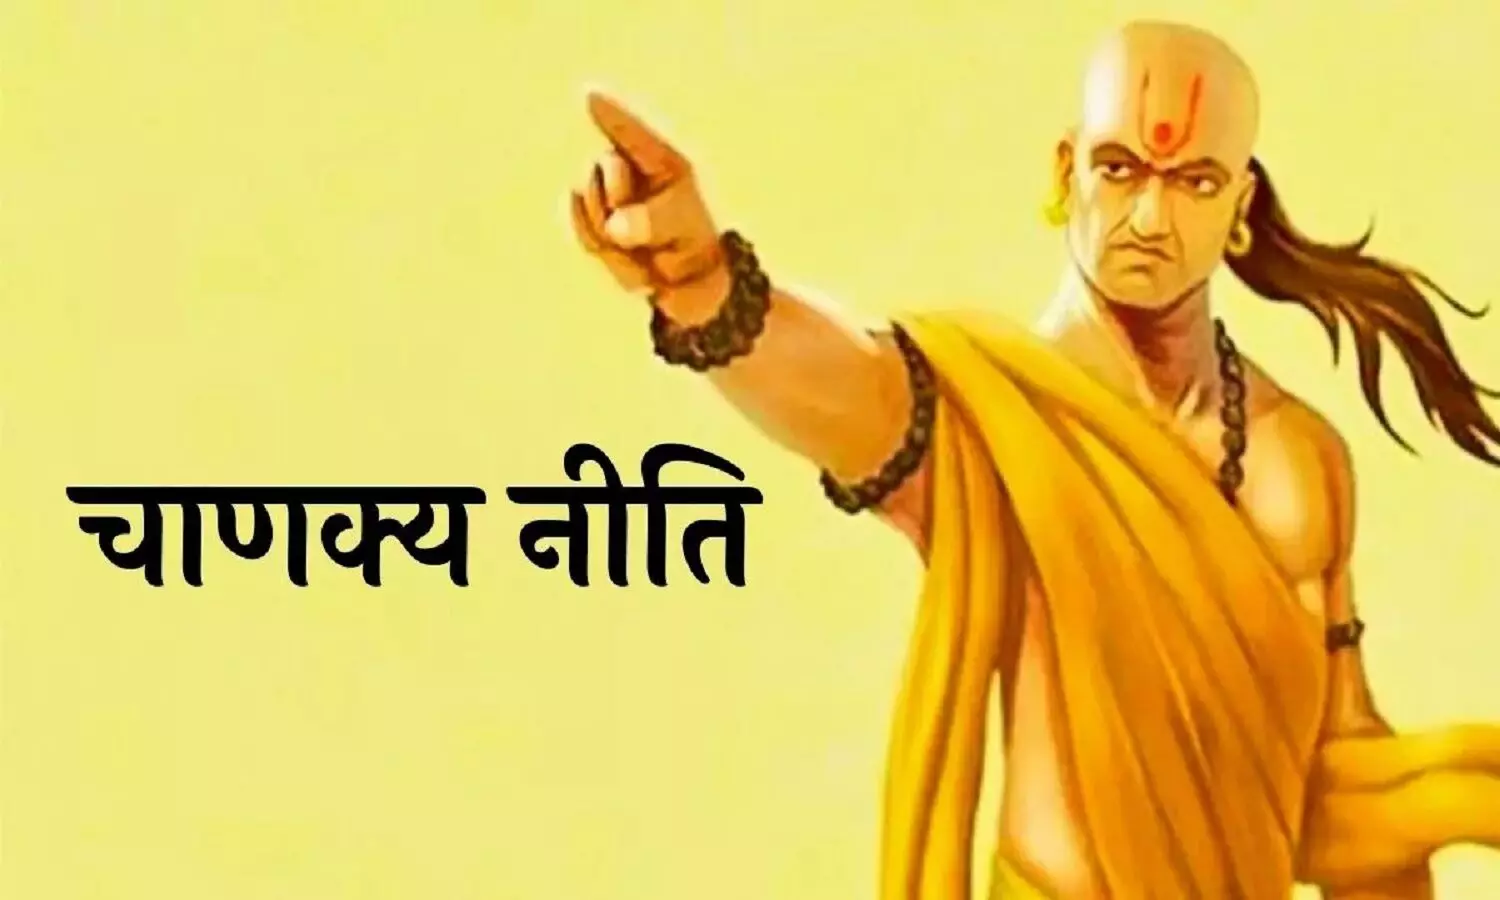 Chanakya Niti : चाणक्य नीति के अनुसार ये आदतें करोड़पति से कंगाल बना देती हैं, जानें और बचें